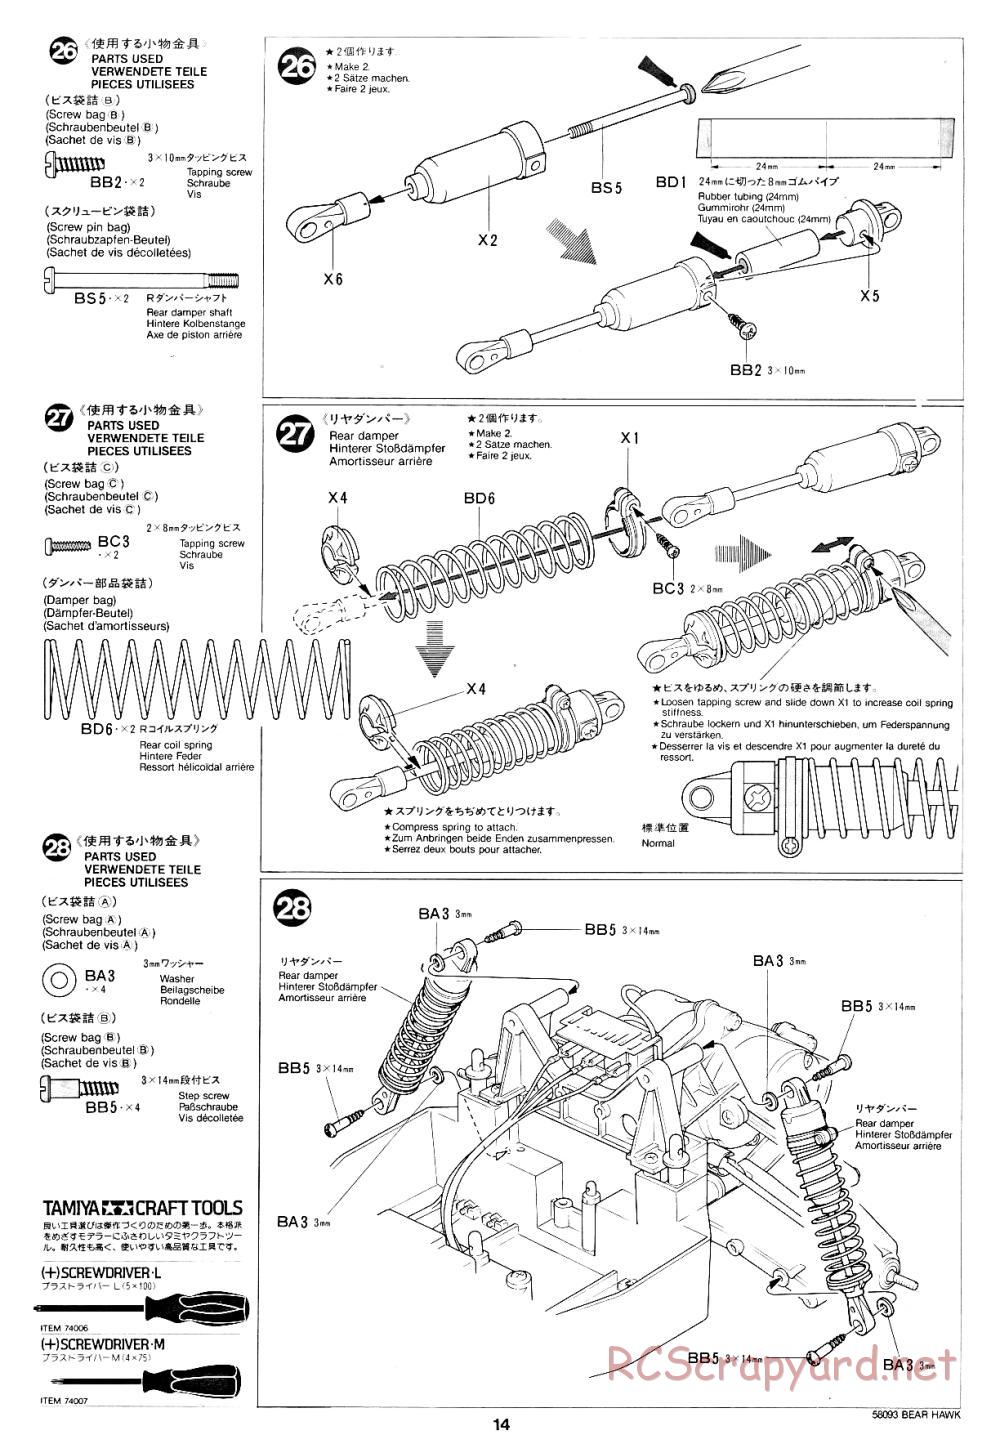 Tamiya - Bear Hawk - 58093 - Manual - Page 14